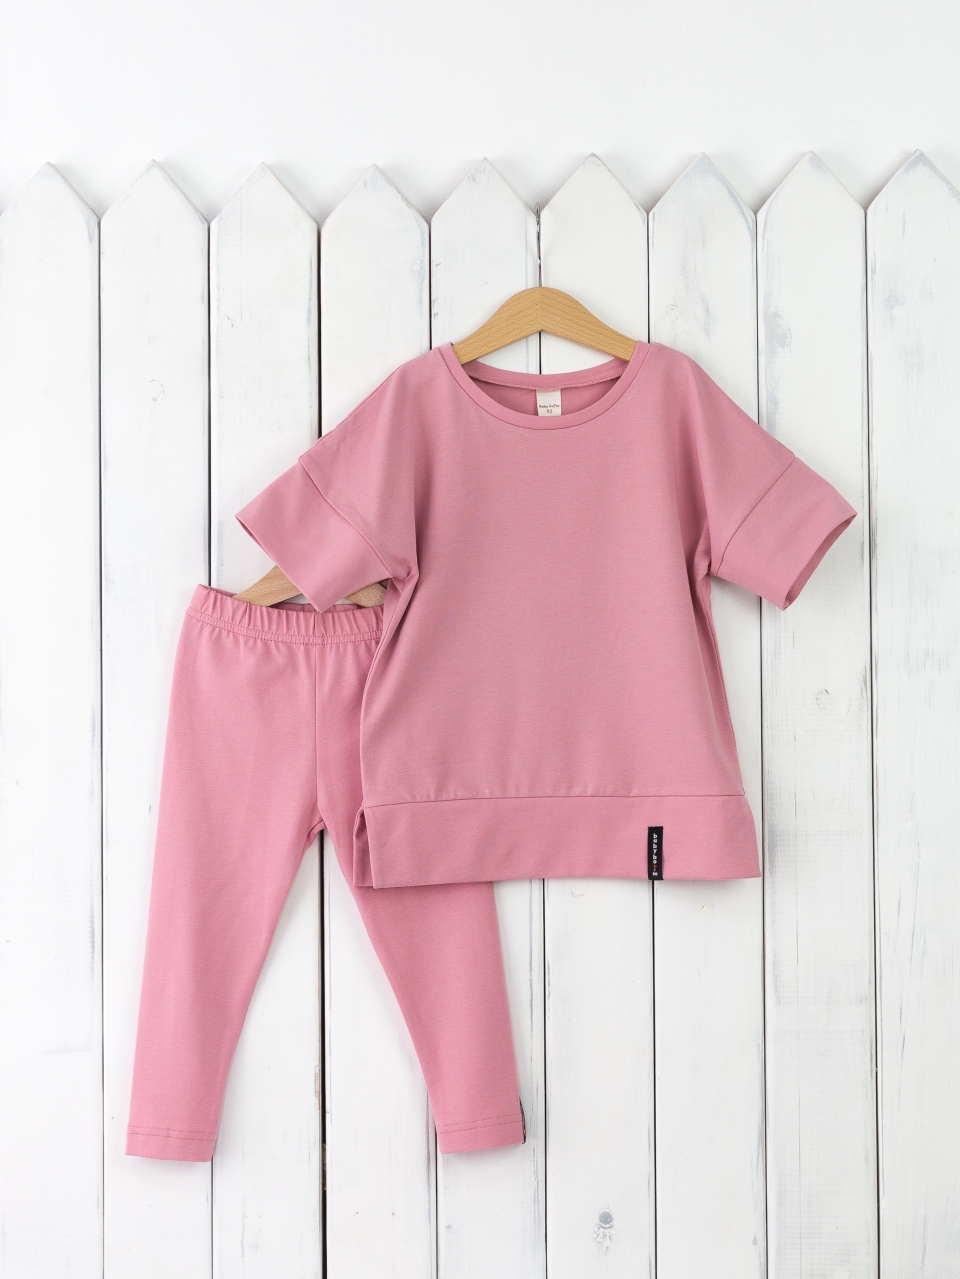 КД352/11-К Комплект для девочки р.98 футболка+легинсы/розовый зефир Бэби Бум - Йошкар-Ола 